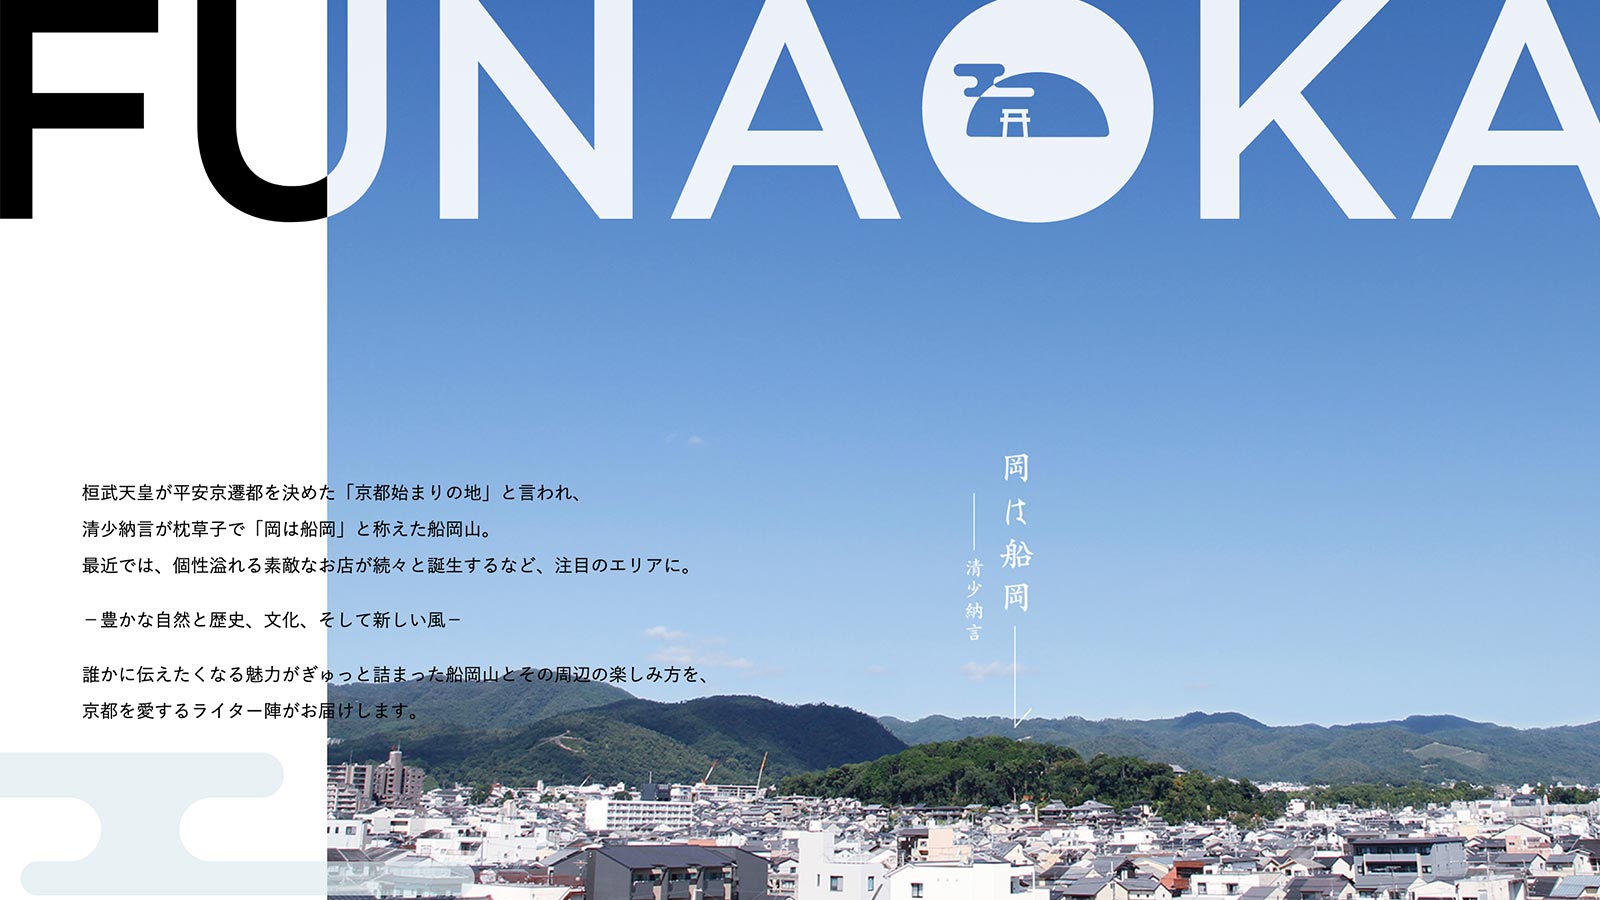 船岡山魅力発信サイト「FUNAOKA」